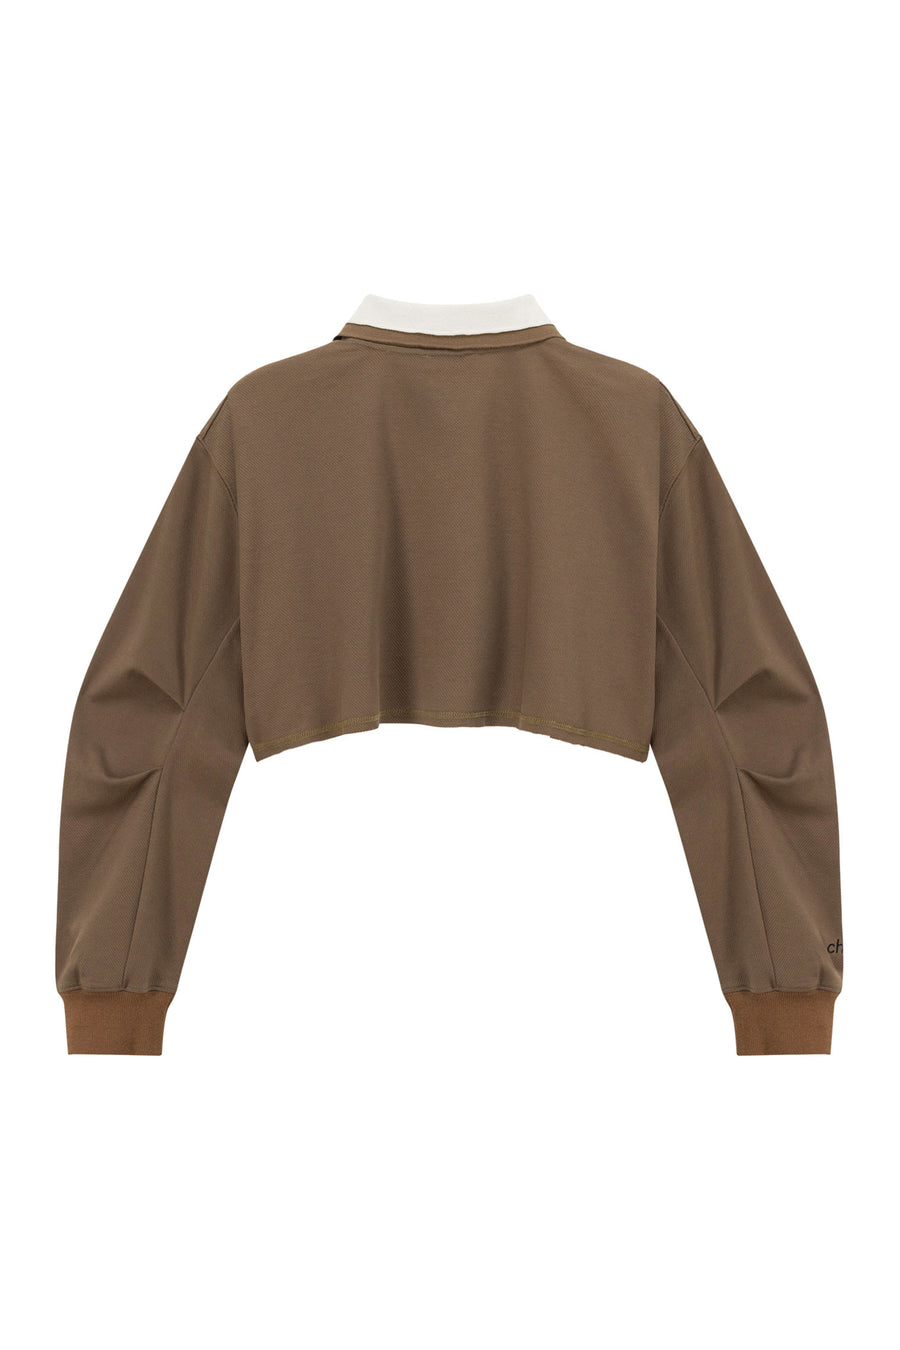 CHUU Color Matching Collar Crop Sweatshirt